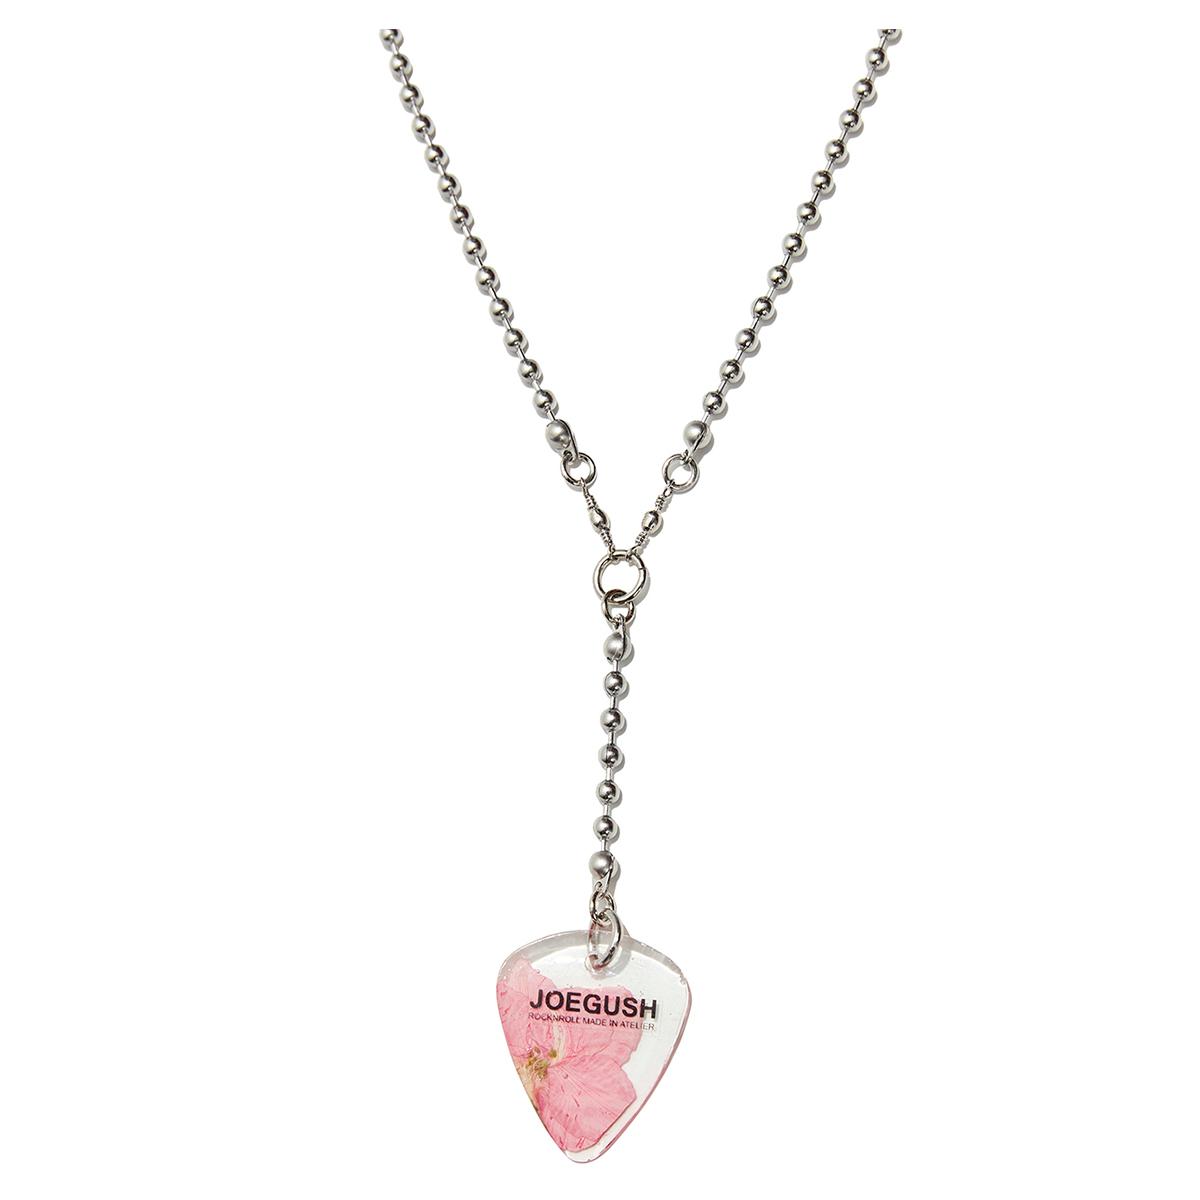 JOEGUSH Pick Necklace (Pink Larkspur)